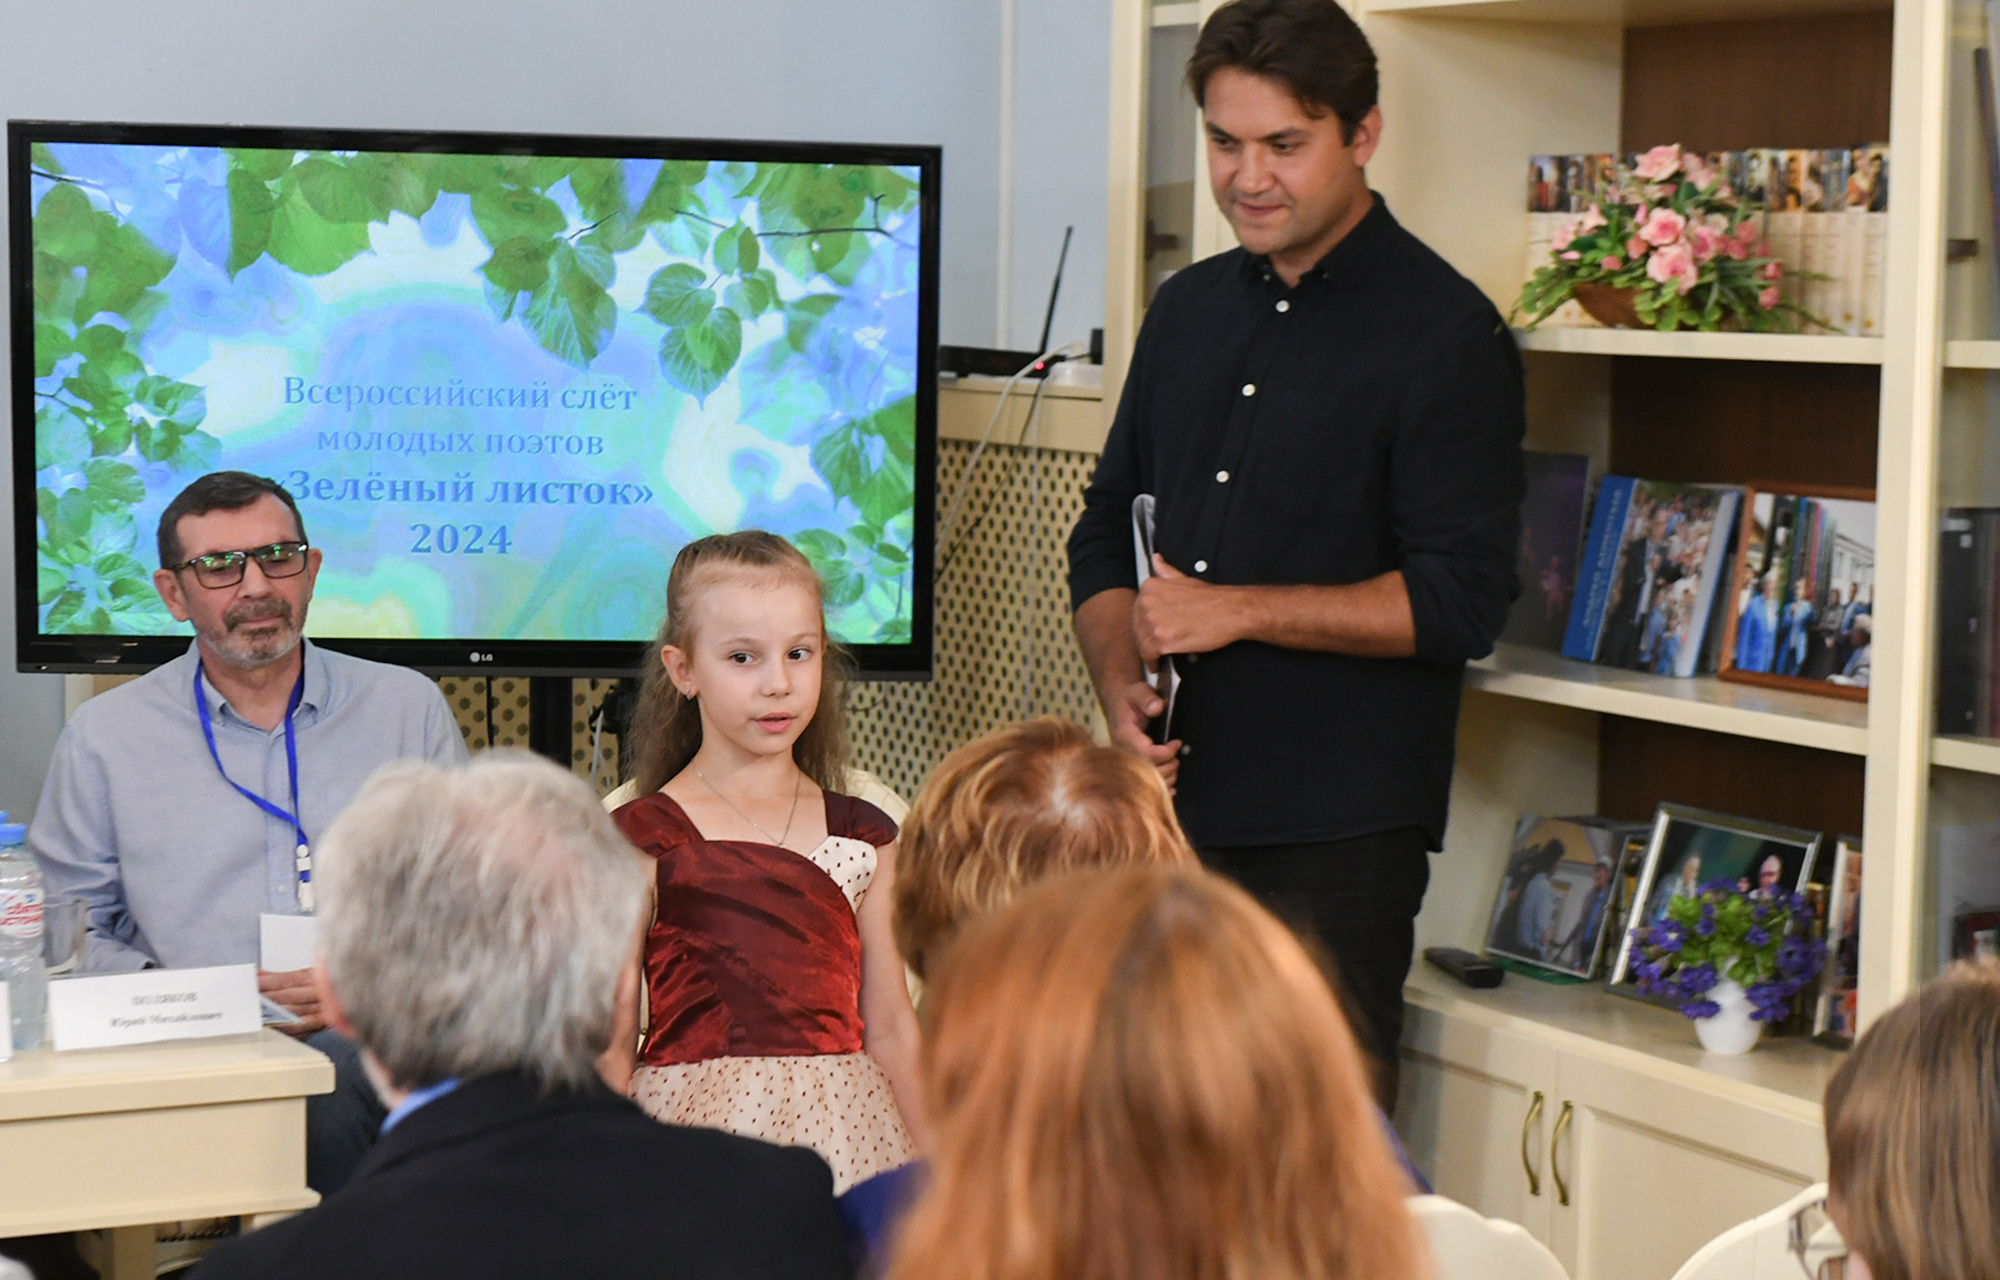 В Твери проходит Всероссийский слёт молодых поэтов «Зелёный листок»